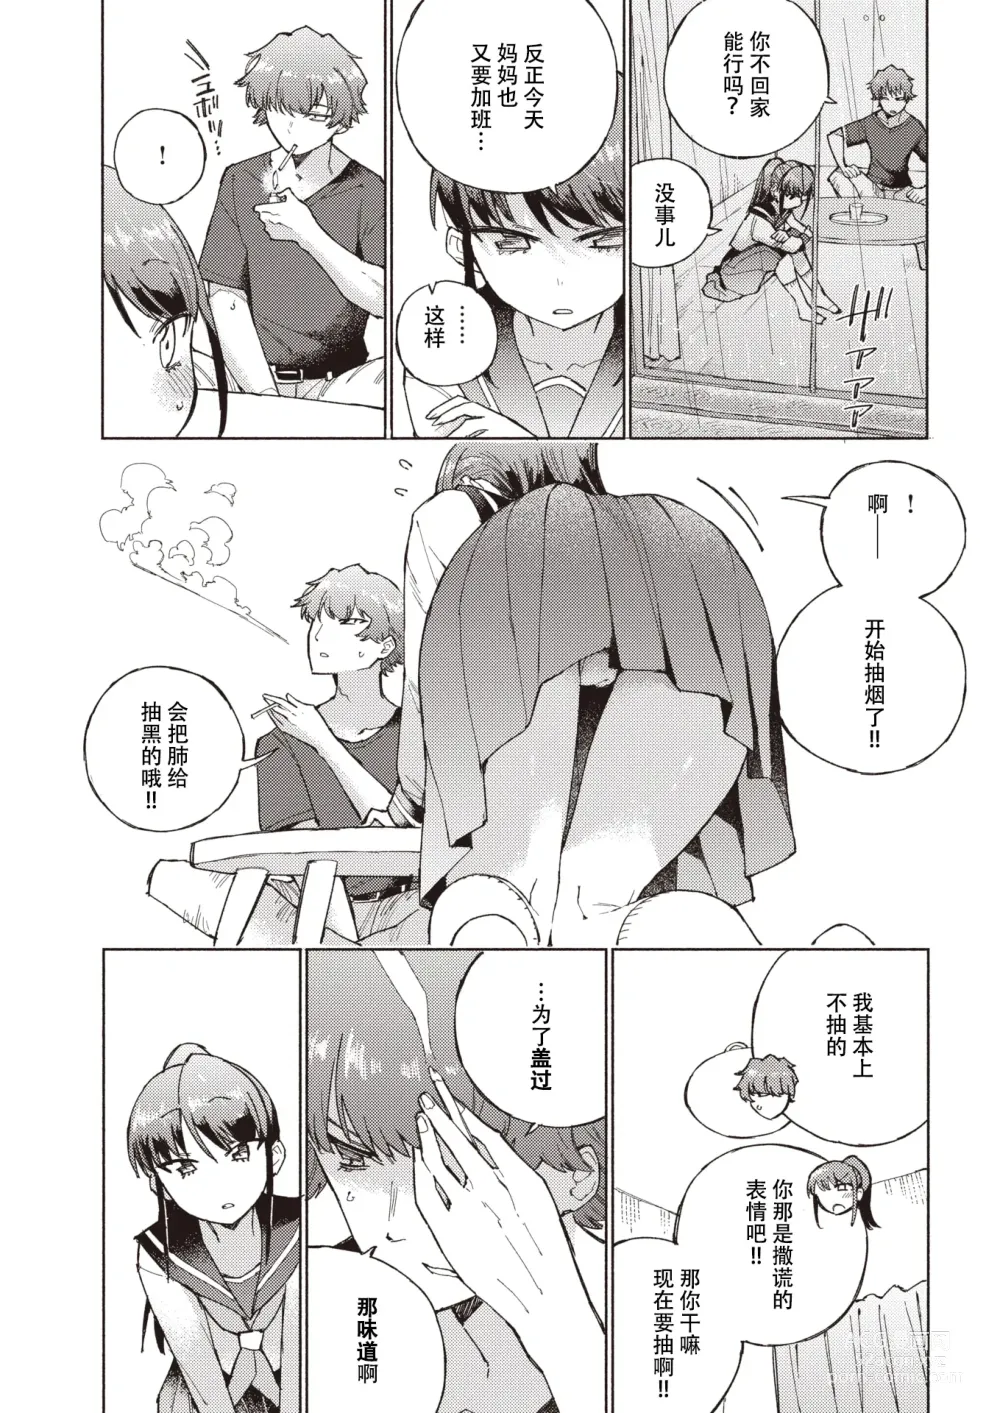 Page 6 of manga 标记